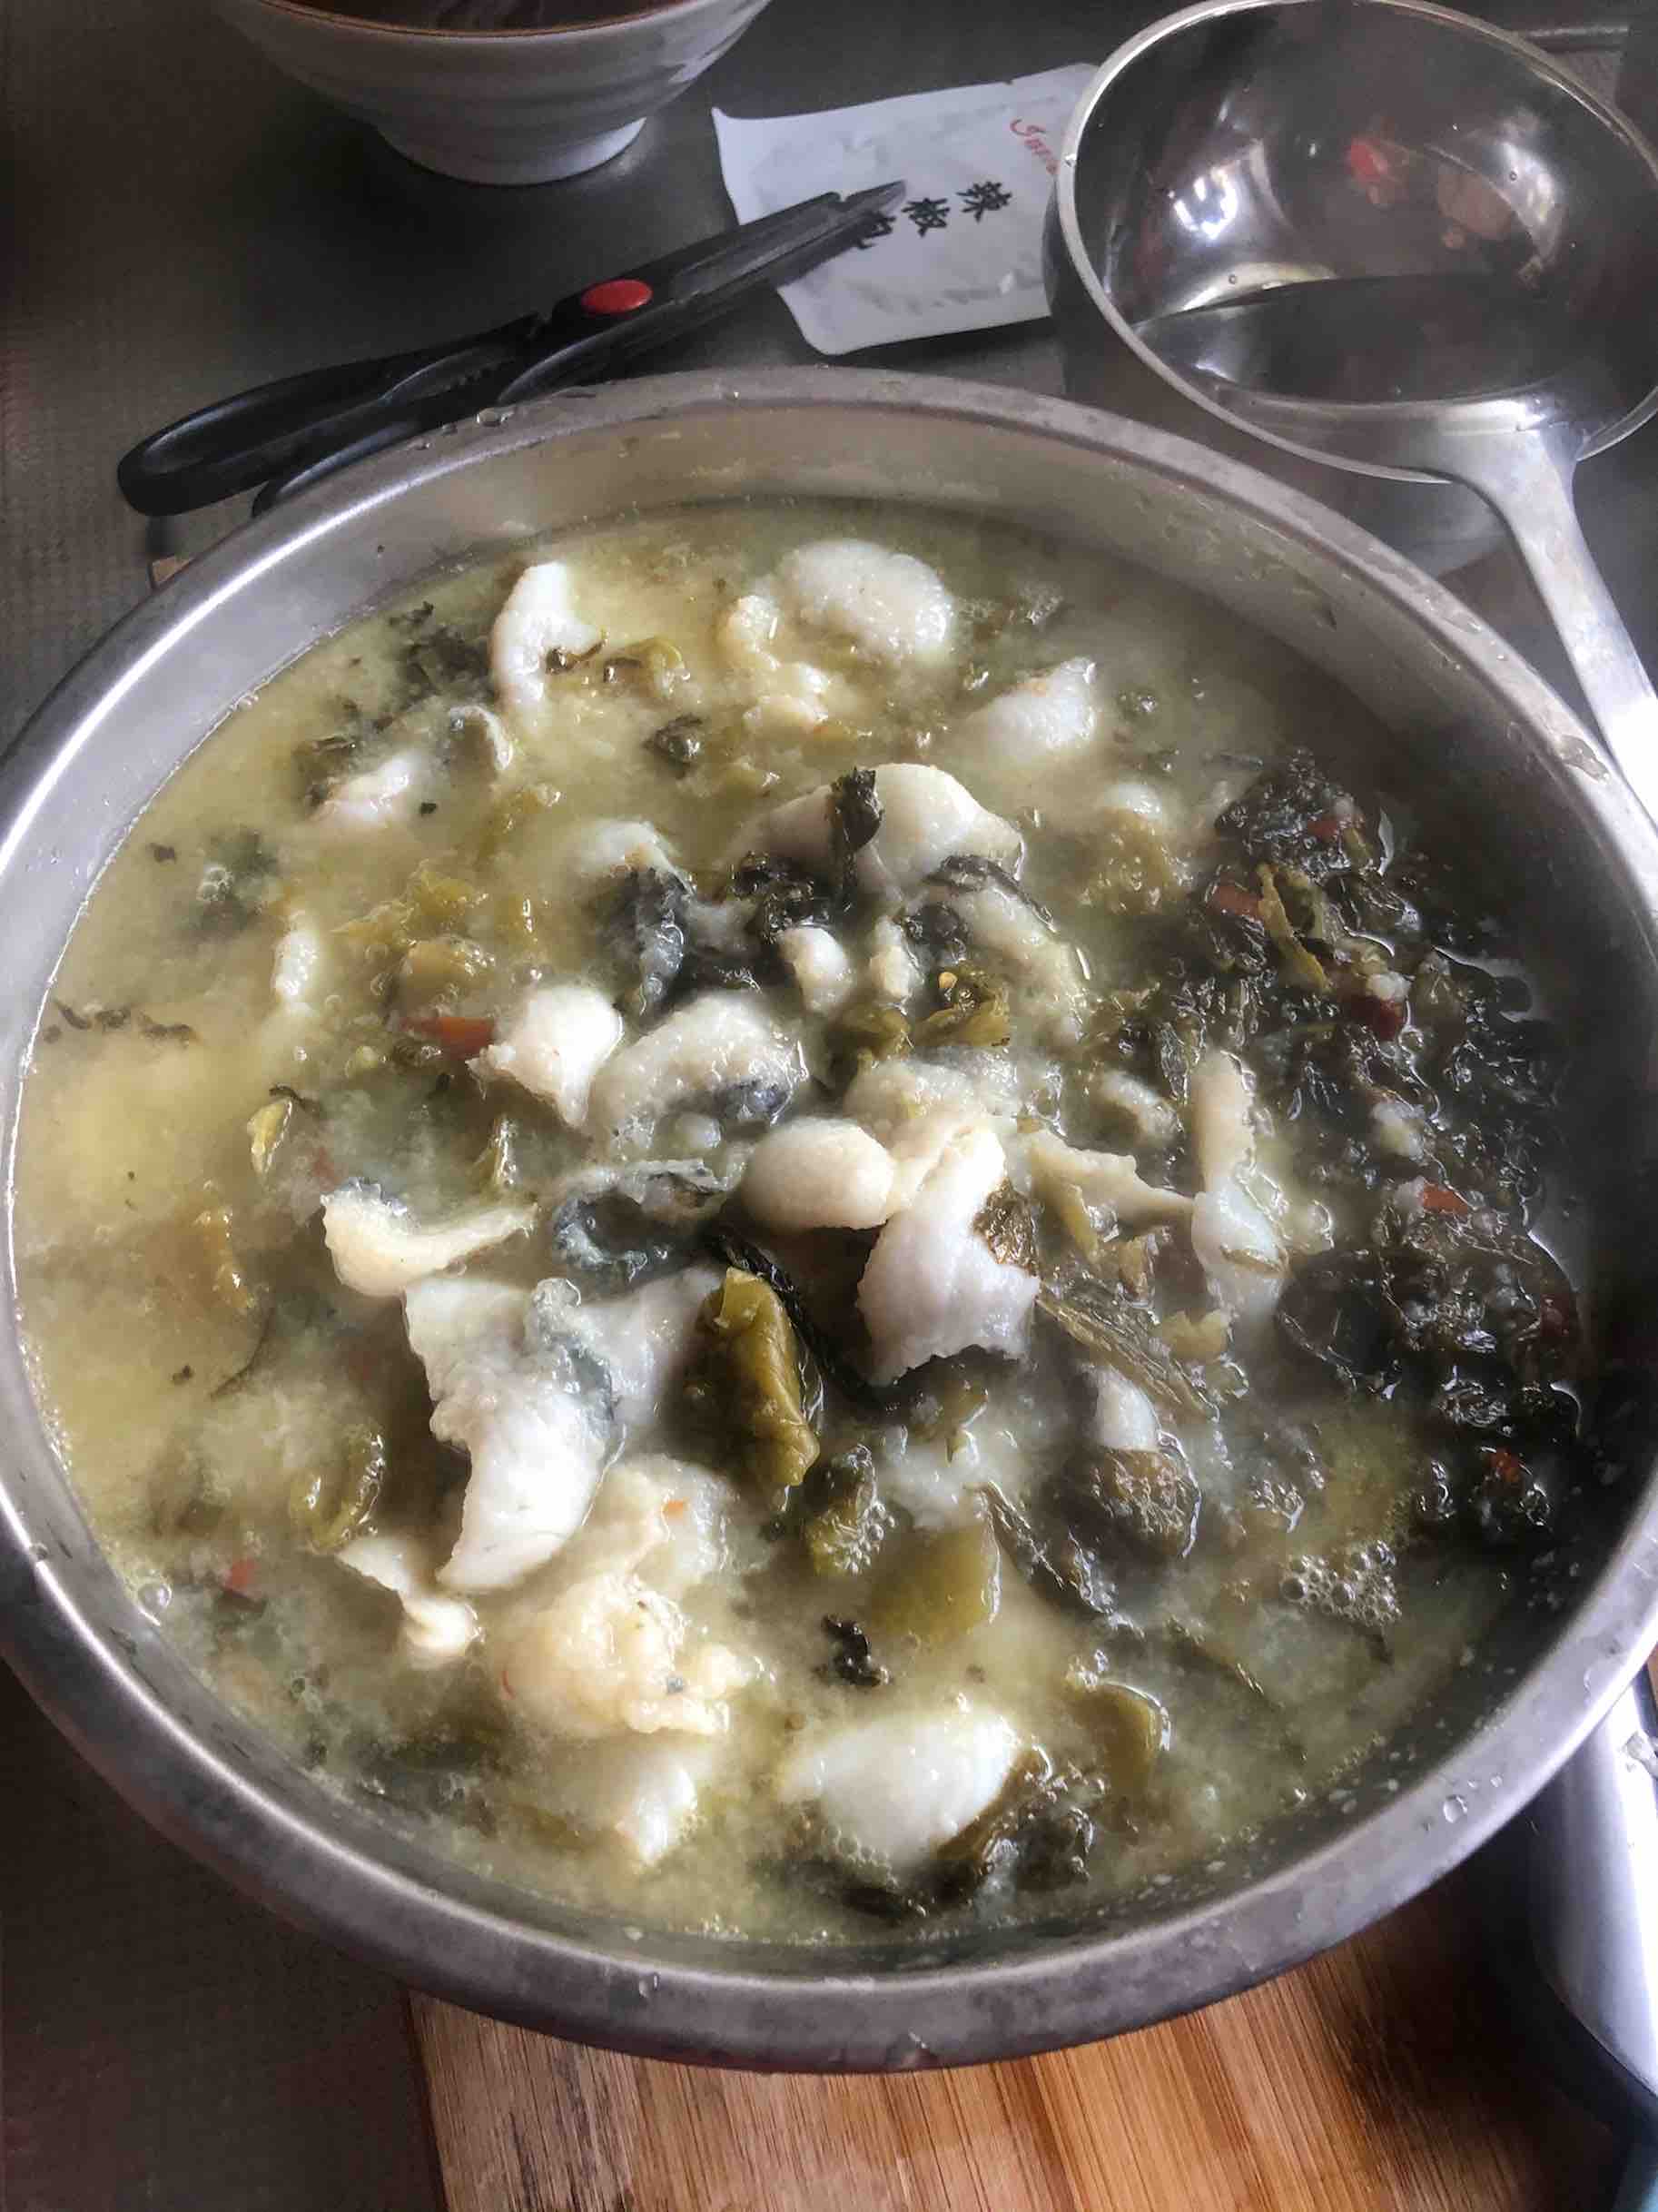 Sauerkraut Fish Fillet recipe